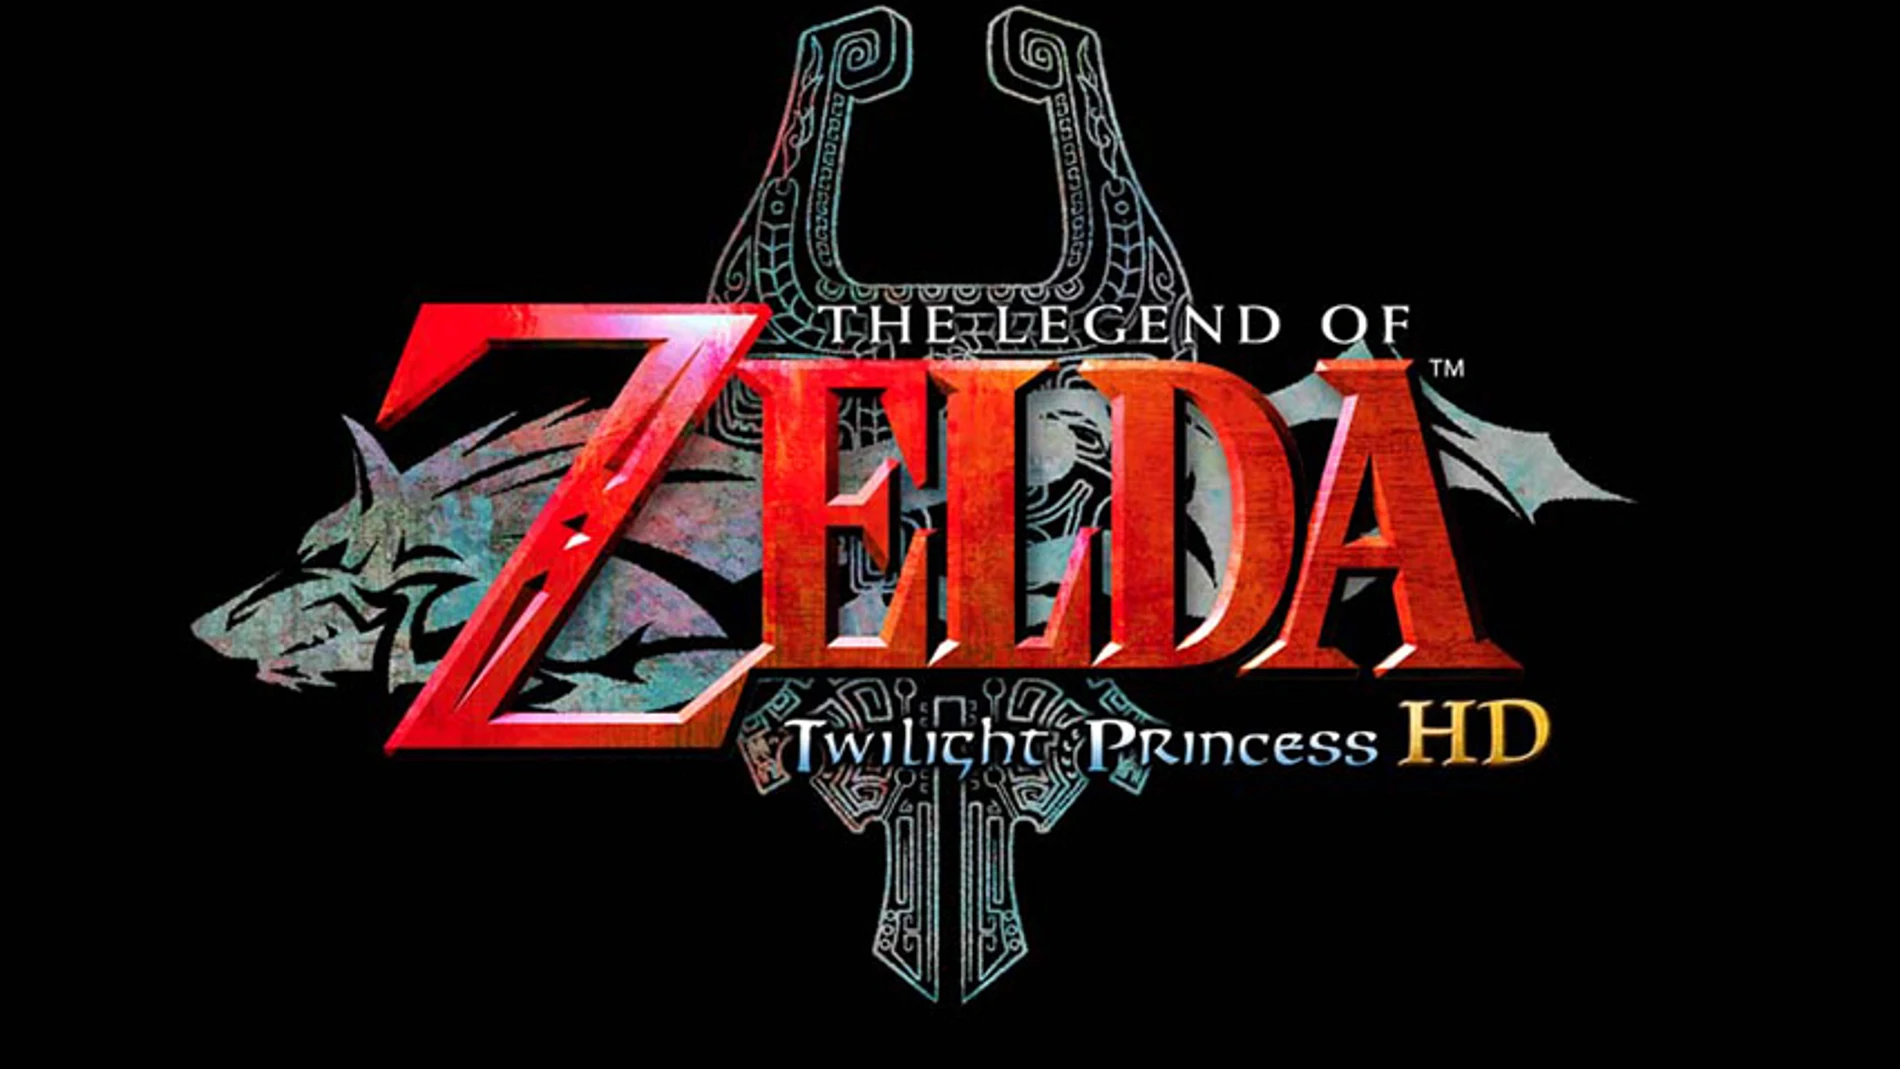 Nuevos detalles de «The Legend of Zelda: Twilight Princess HD», que confirma modo héroe